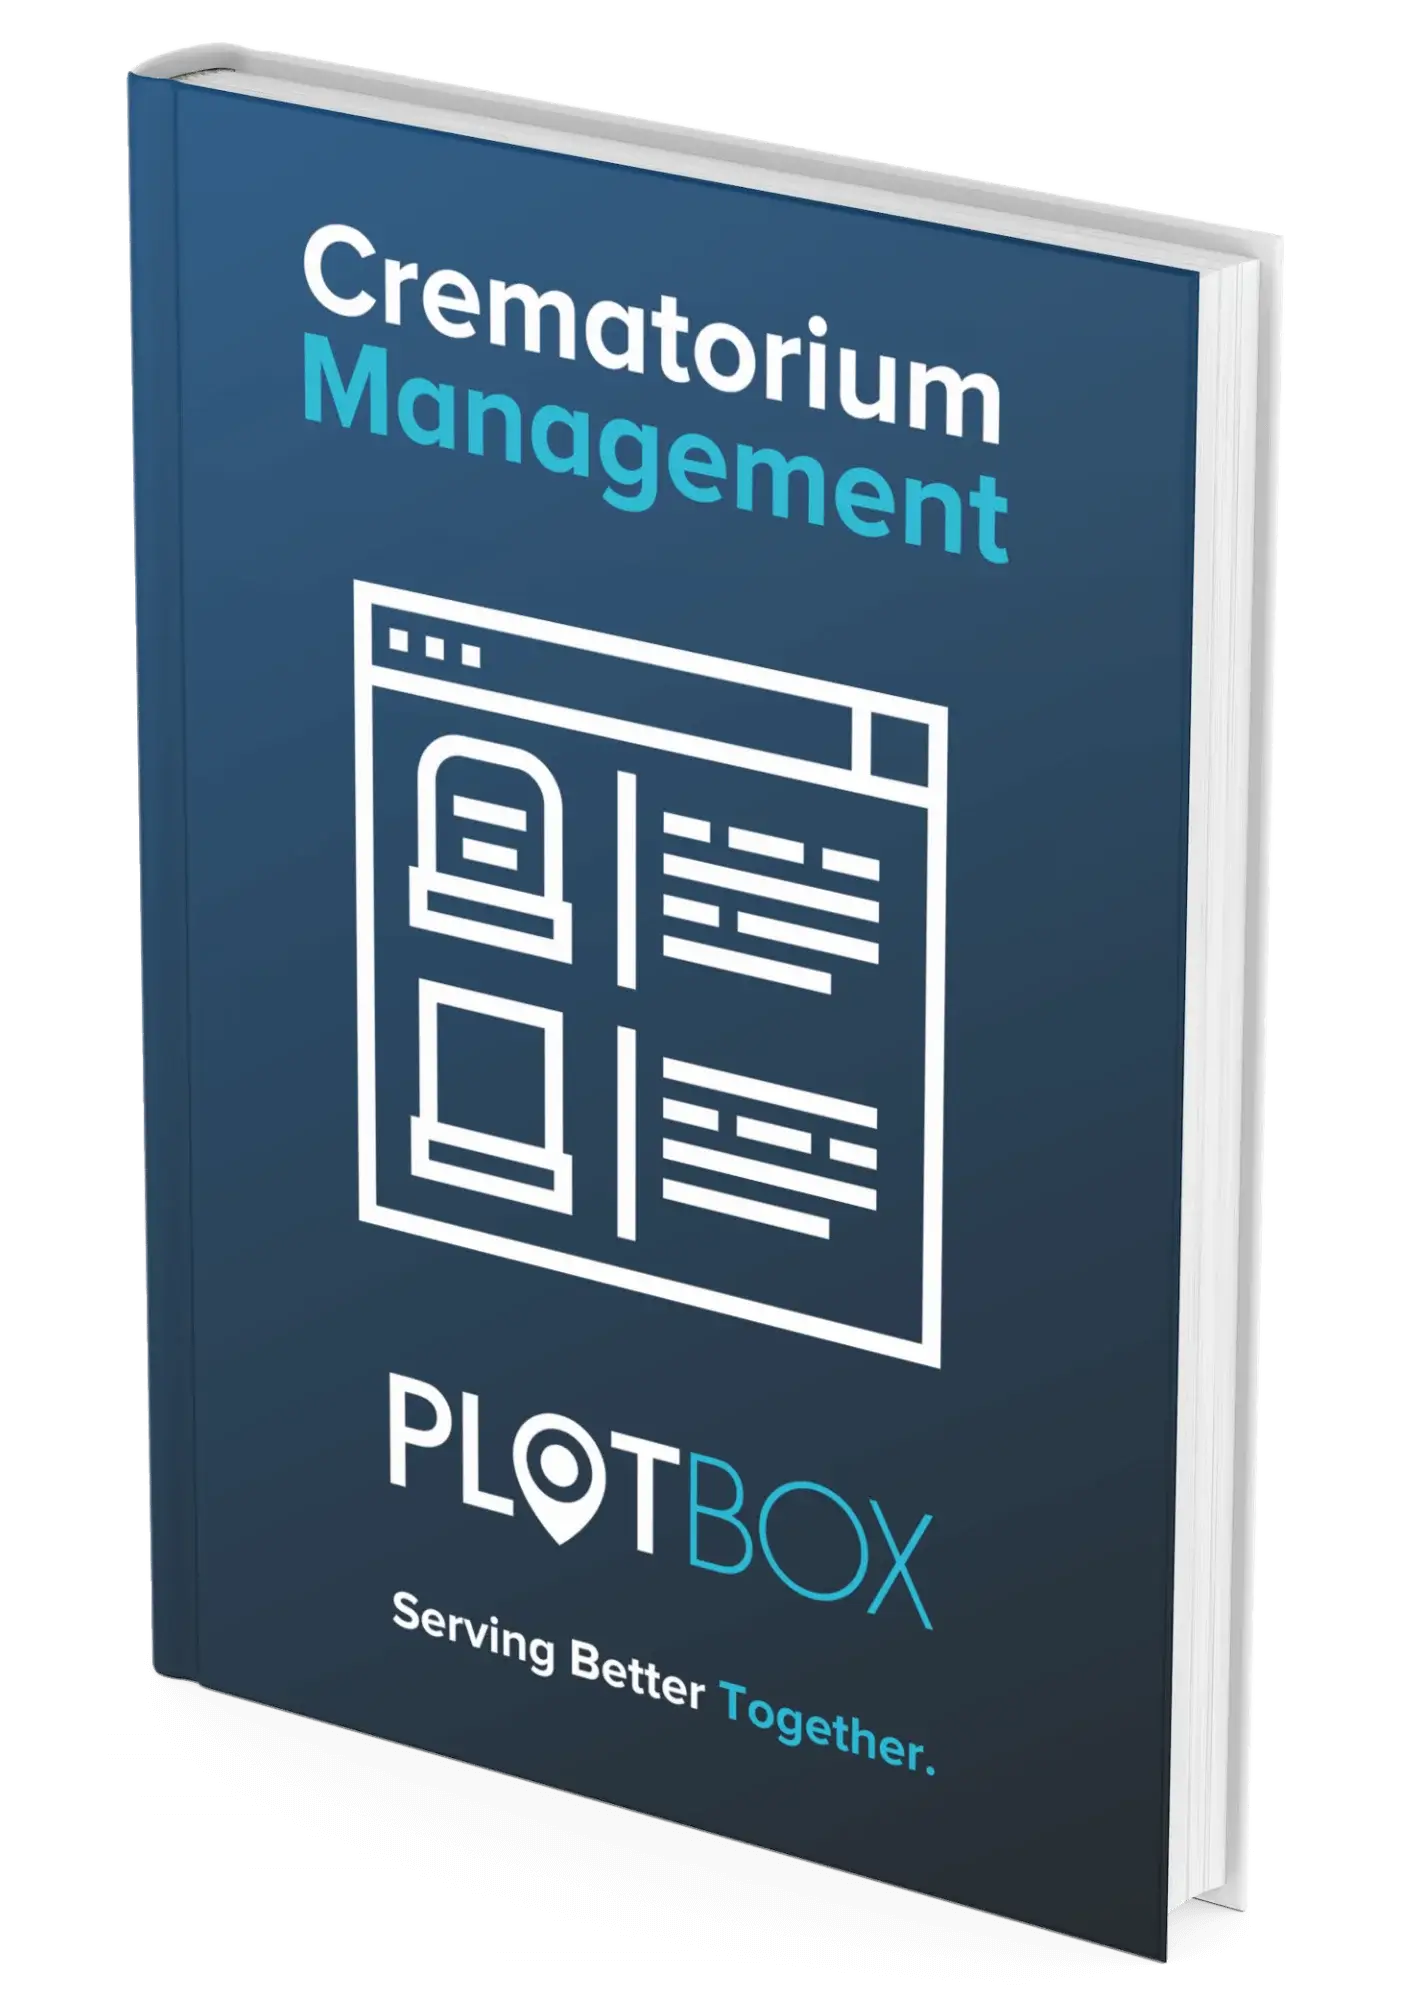 PlotBox - Crematorium Management